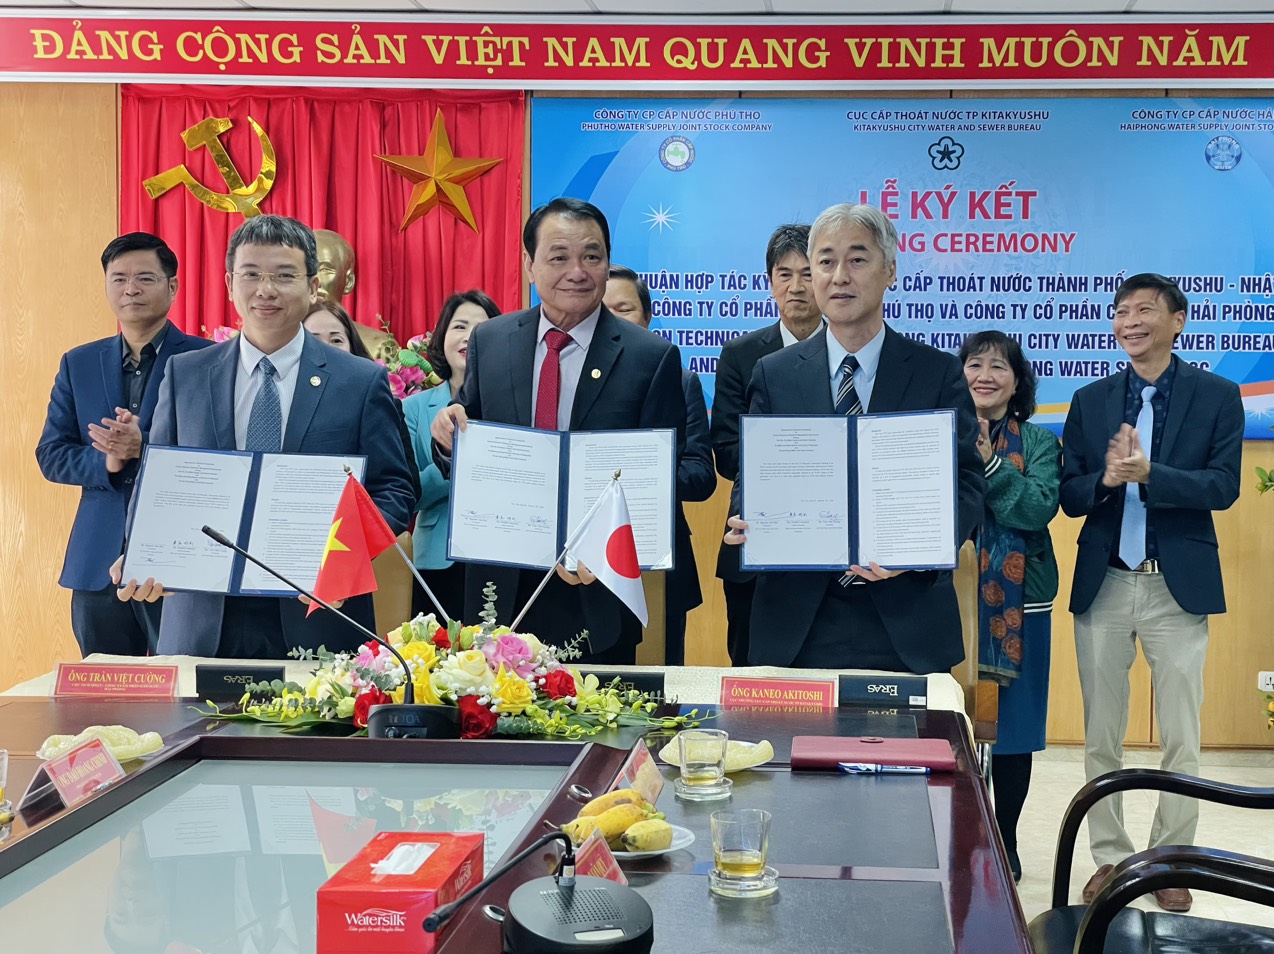 2909/Ký kết MOU hợp tác kỹ thuật, nâng cao năng lực quản lý ngành nước Việt Nam và Nhật Bản